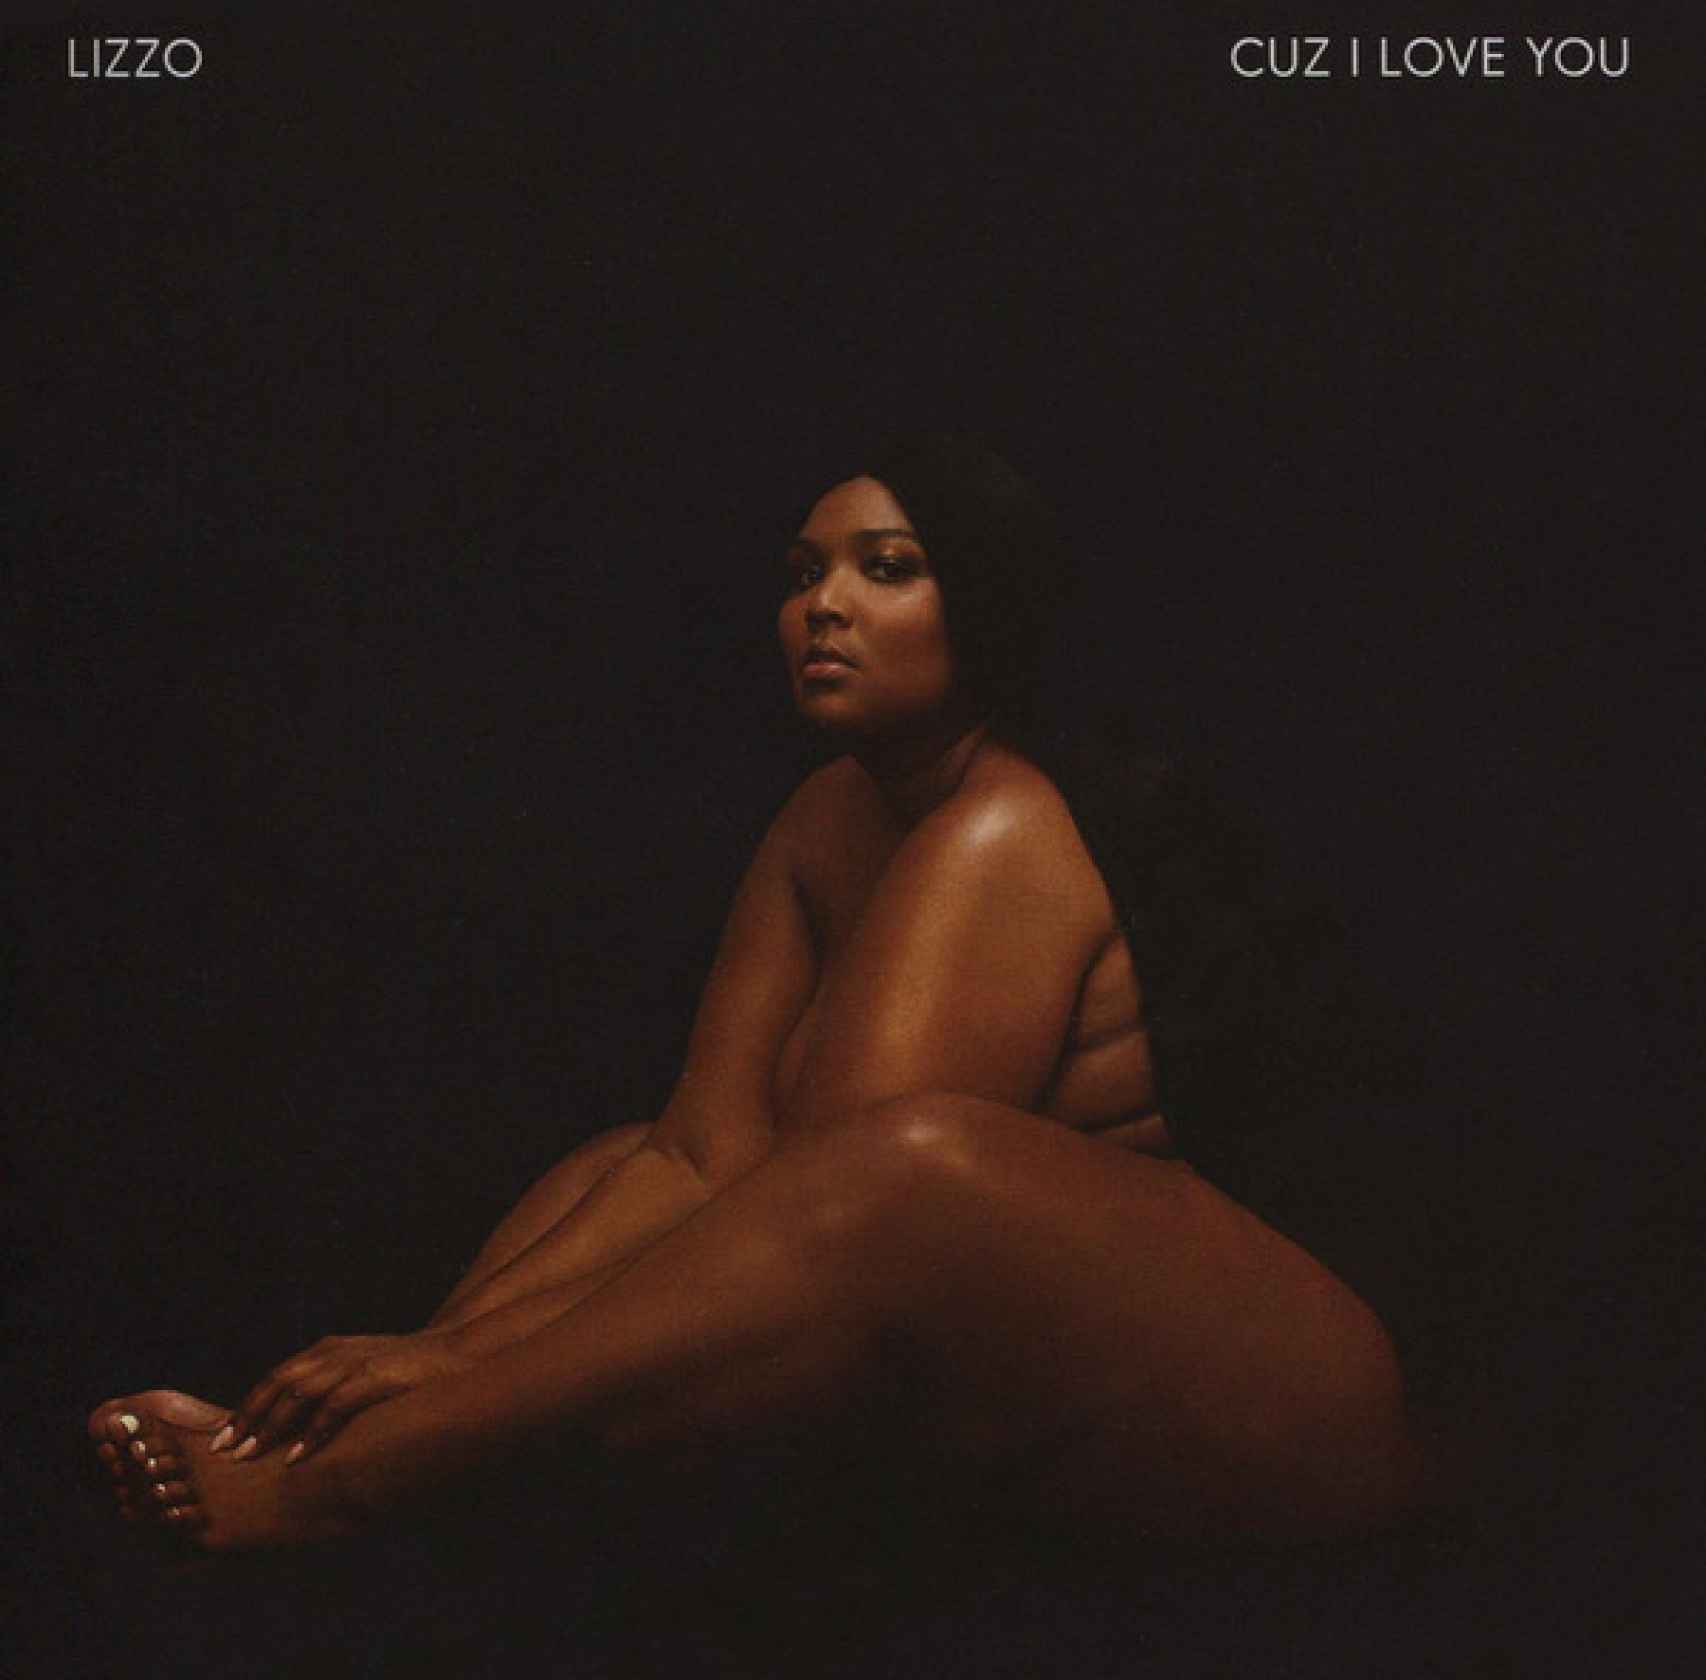 Portada del álbum 'Cuz I Love You', de Lizzo.